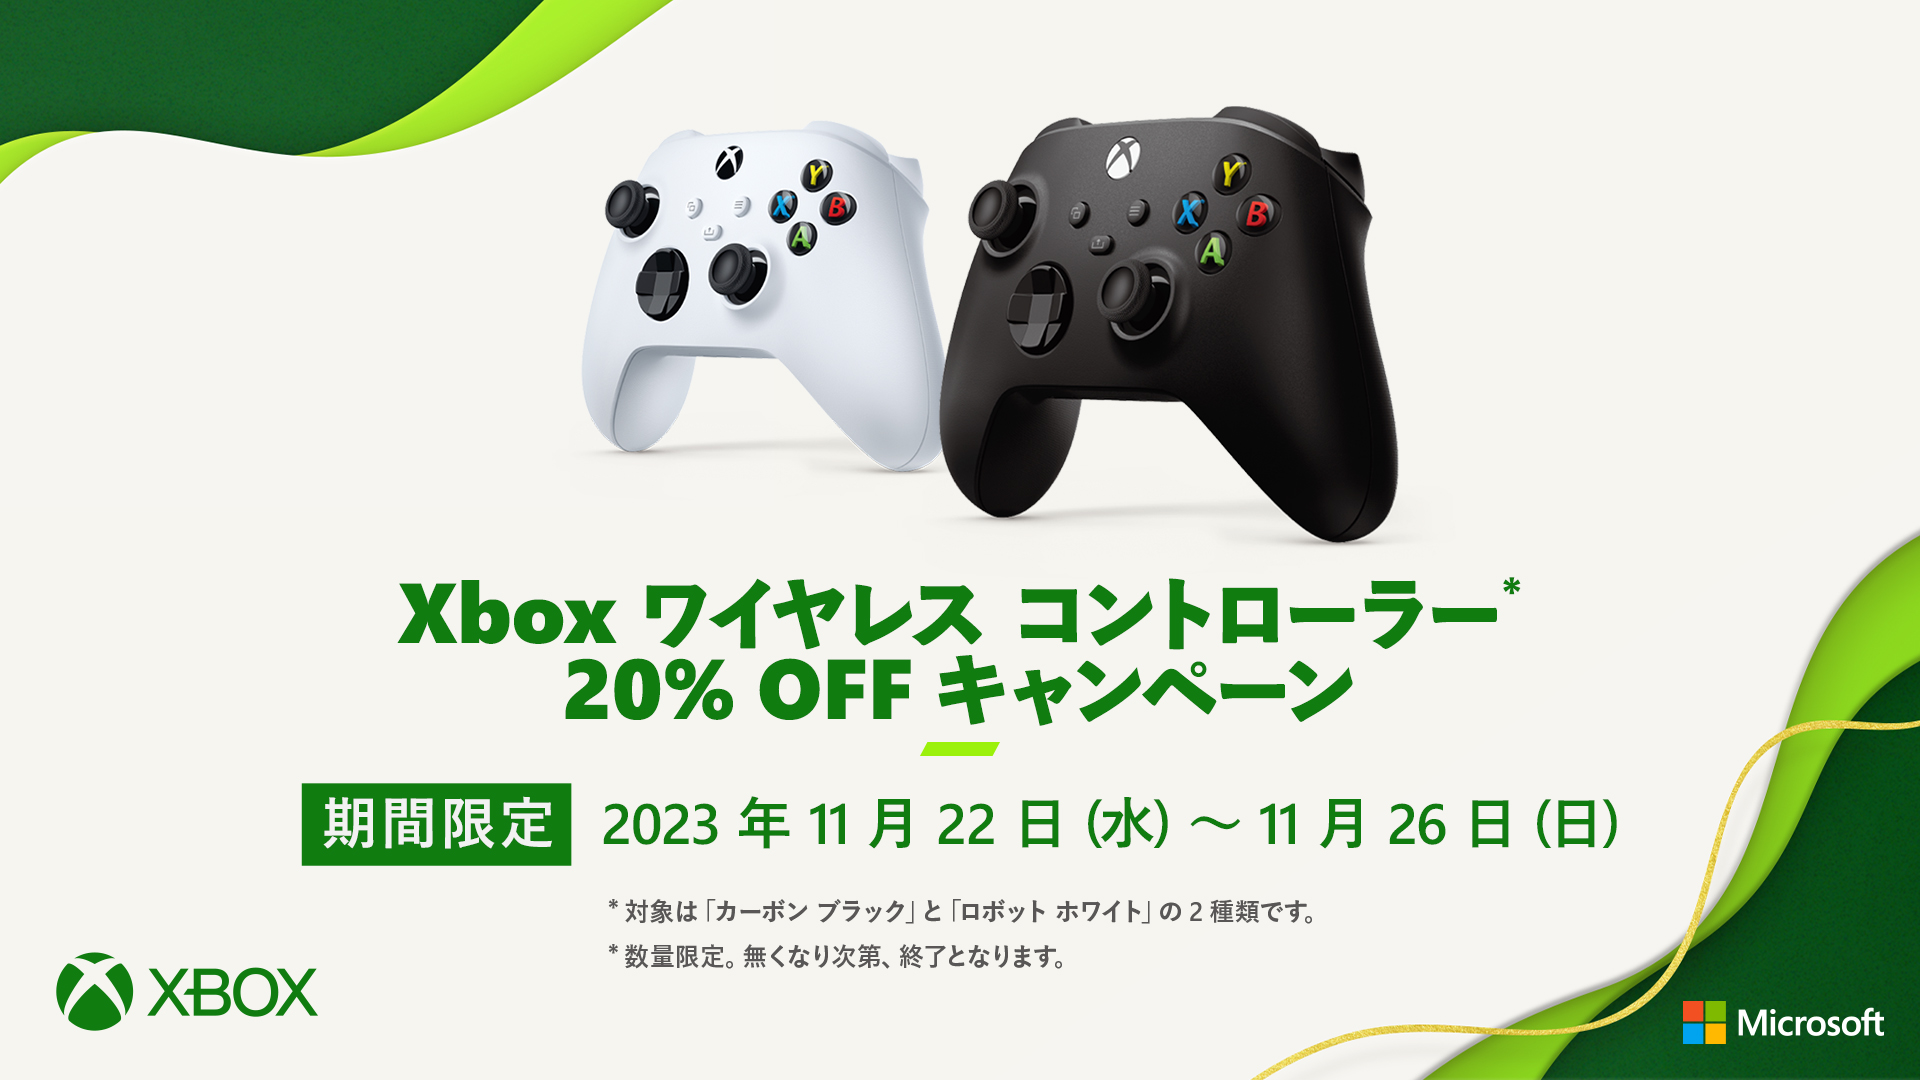 Xbox ワイヤレスコントローラー 20%OFFキャンペーン」が11月22日より ...